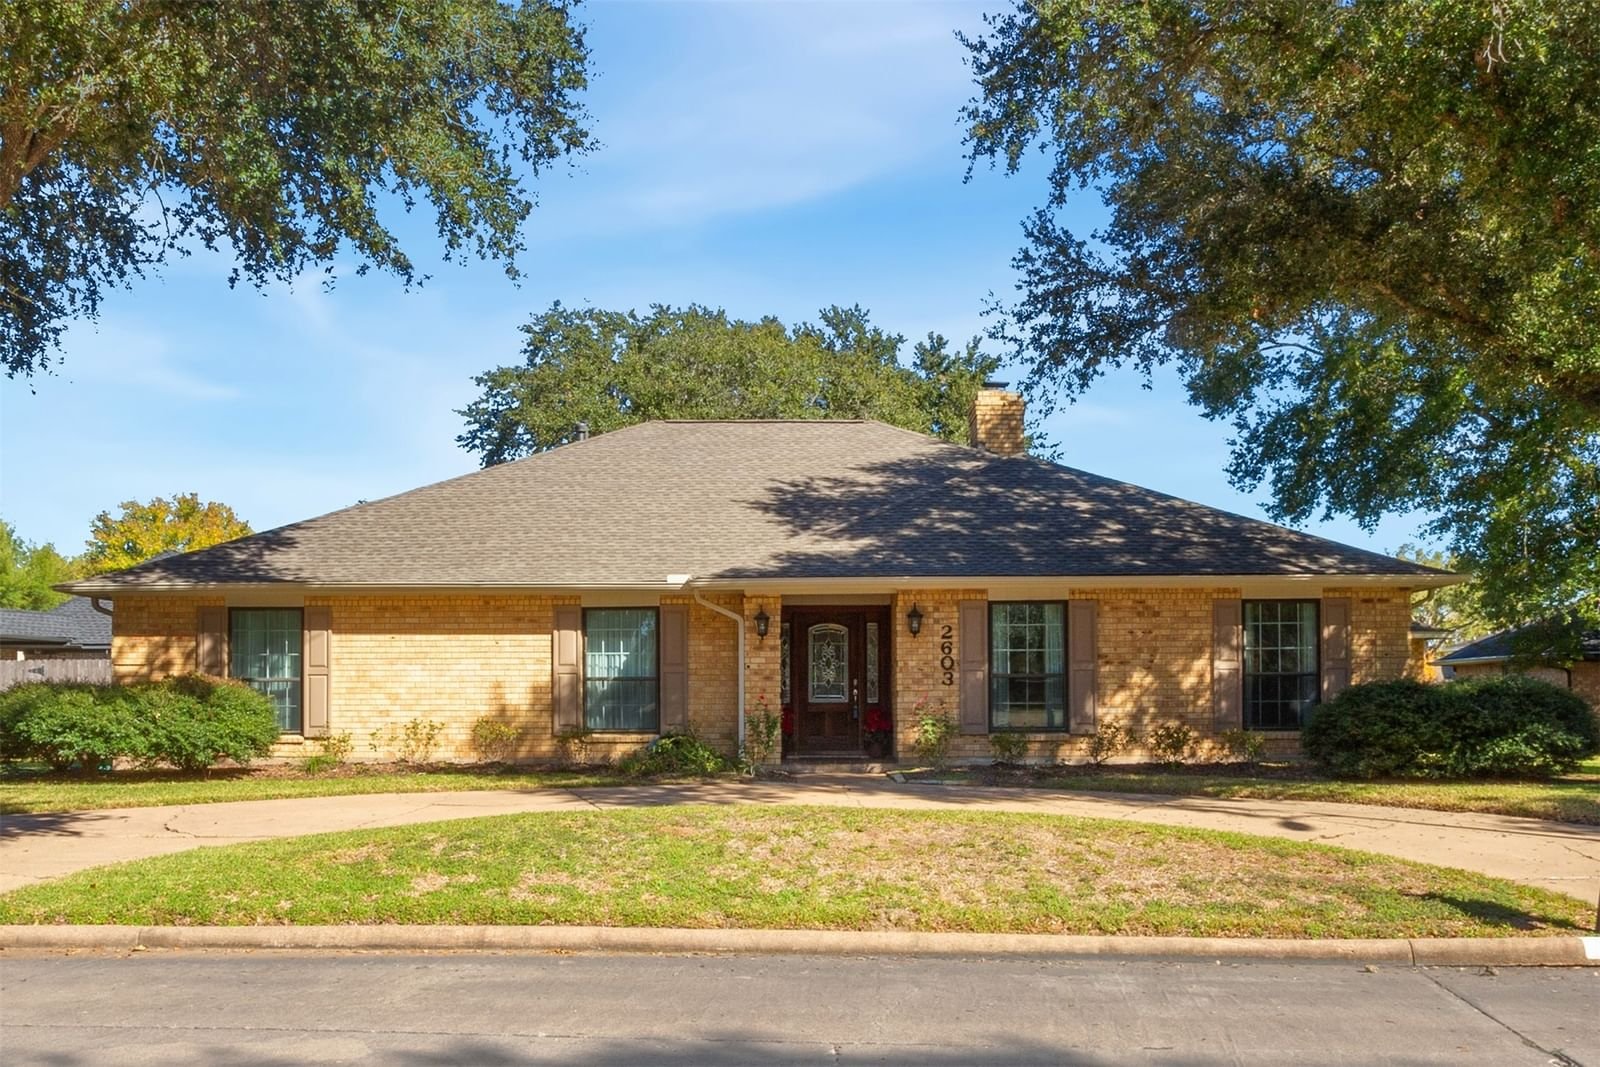 Real estate property located at 2603 Live Oak, Fort Bend, Bayou Park, Rosenberg, TX, US